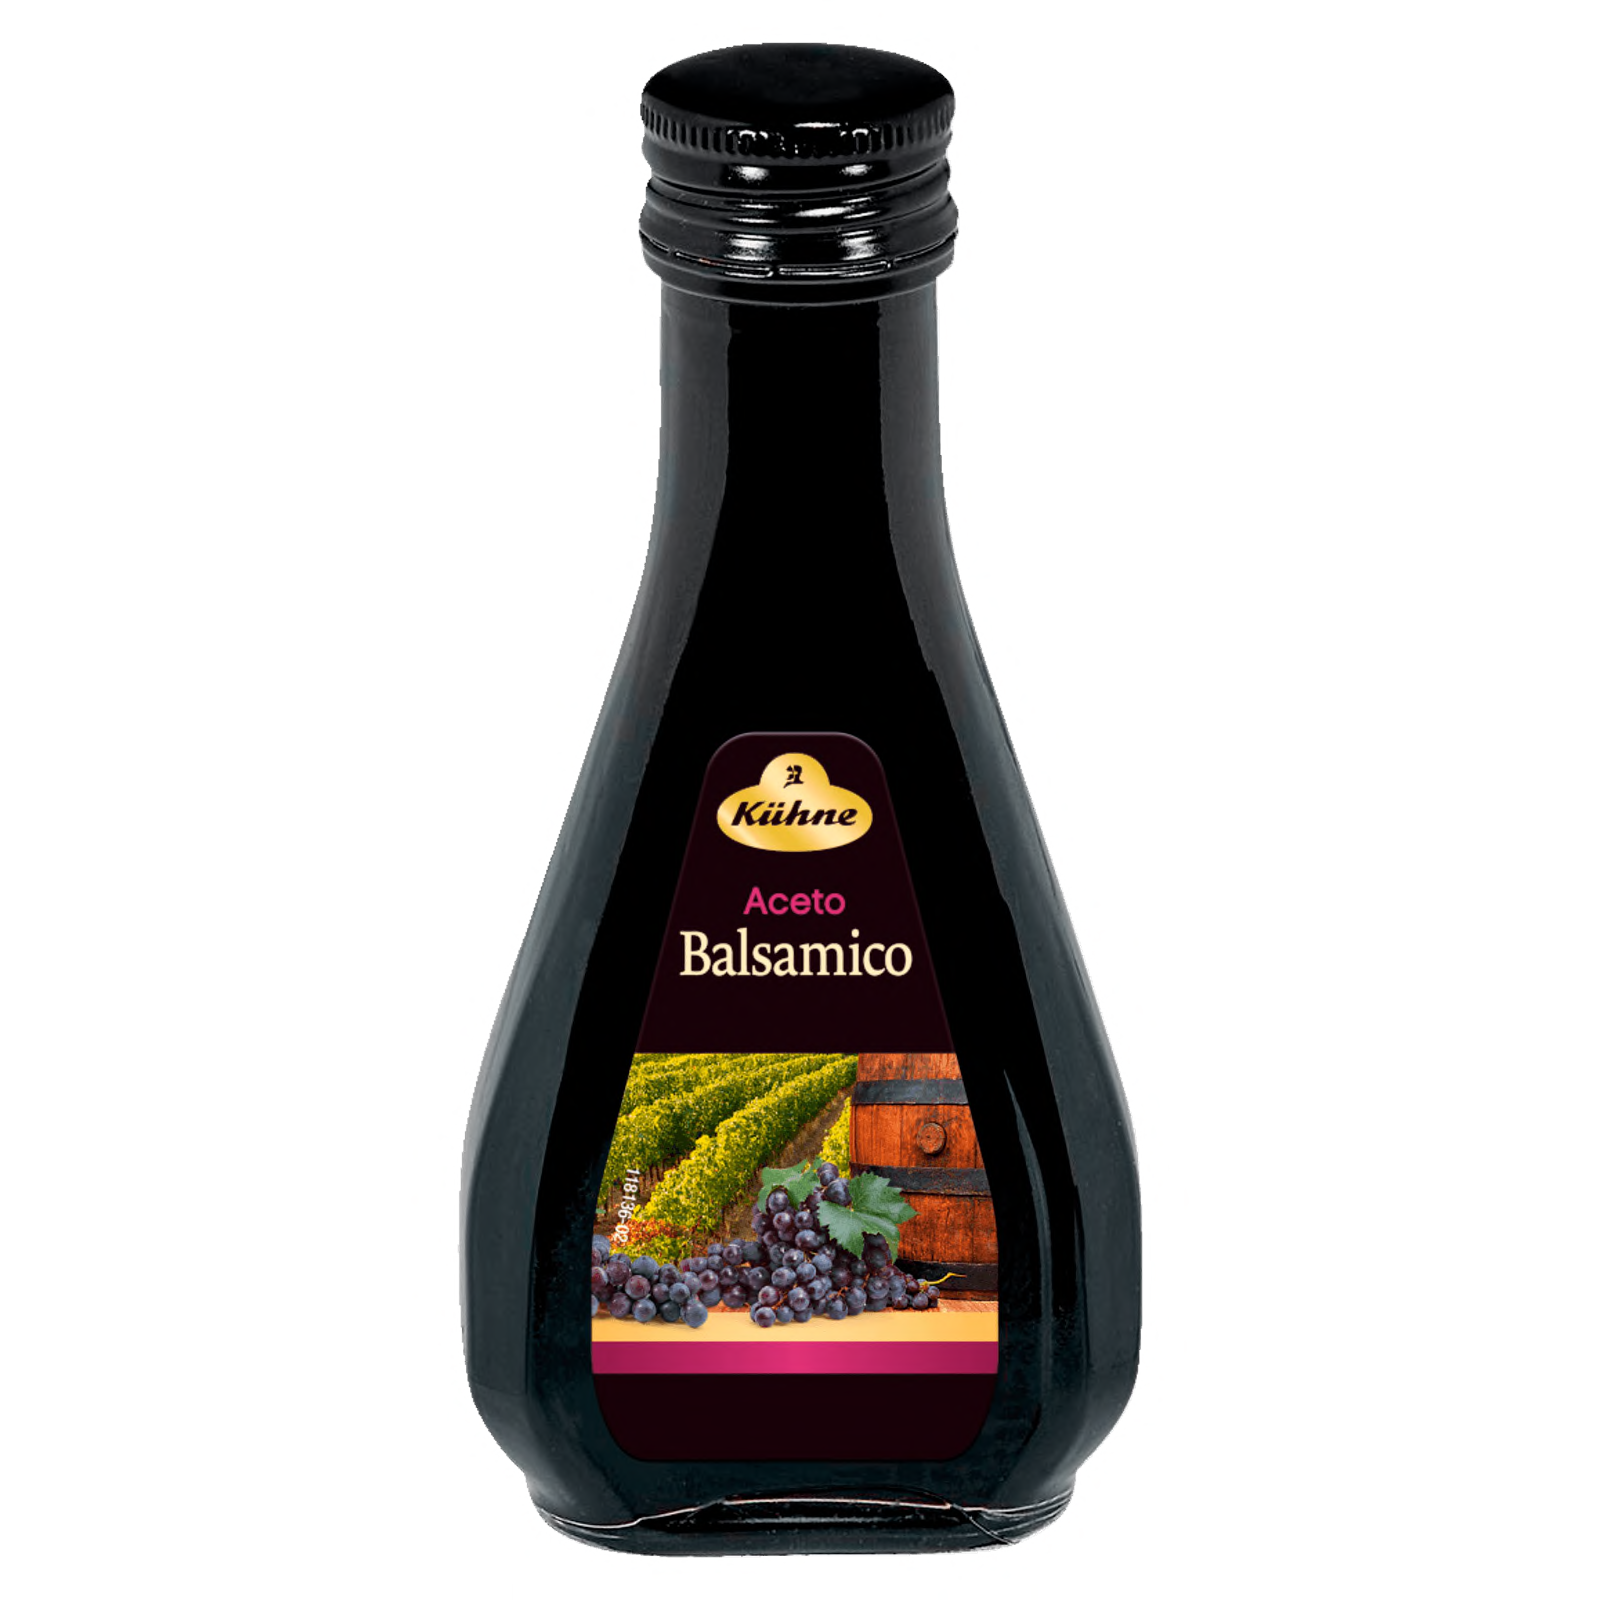 Оливковое масло и бальзамический уксус. Ачето бальзамико. Aceto Balsamico соус. Бальзамический уксус Германия Кюхне. Aceto Balsamico 5 lt уксус бальзамический 5лт.